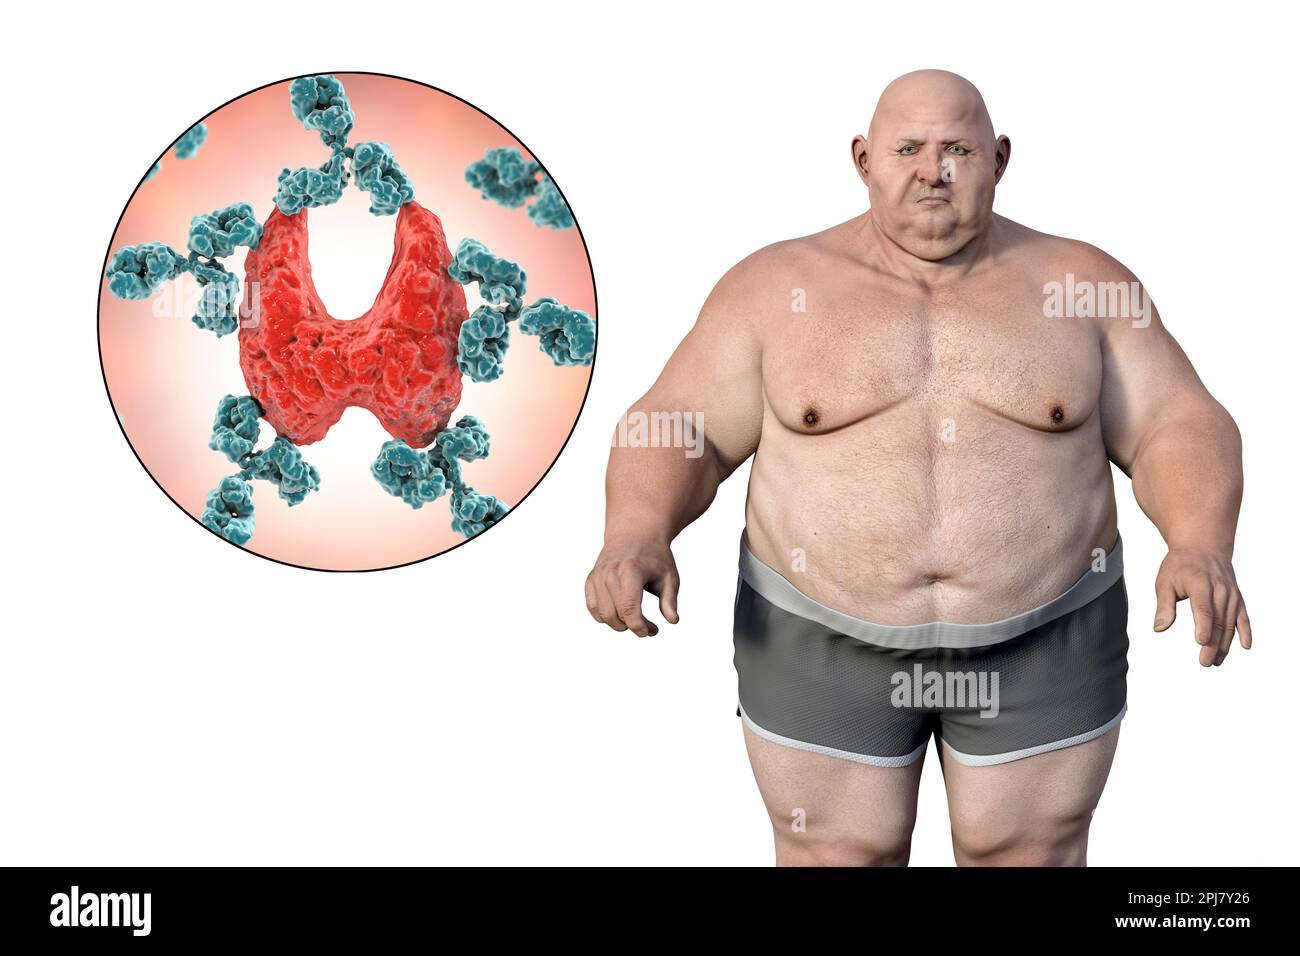 Autoimmune thyroid disease and obesity, illustration Stock Photo